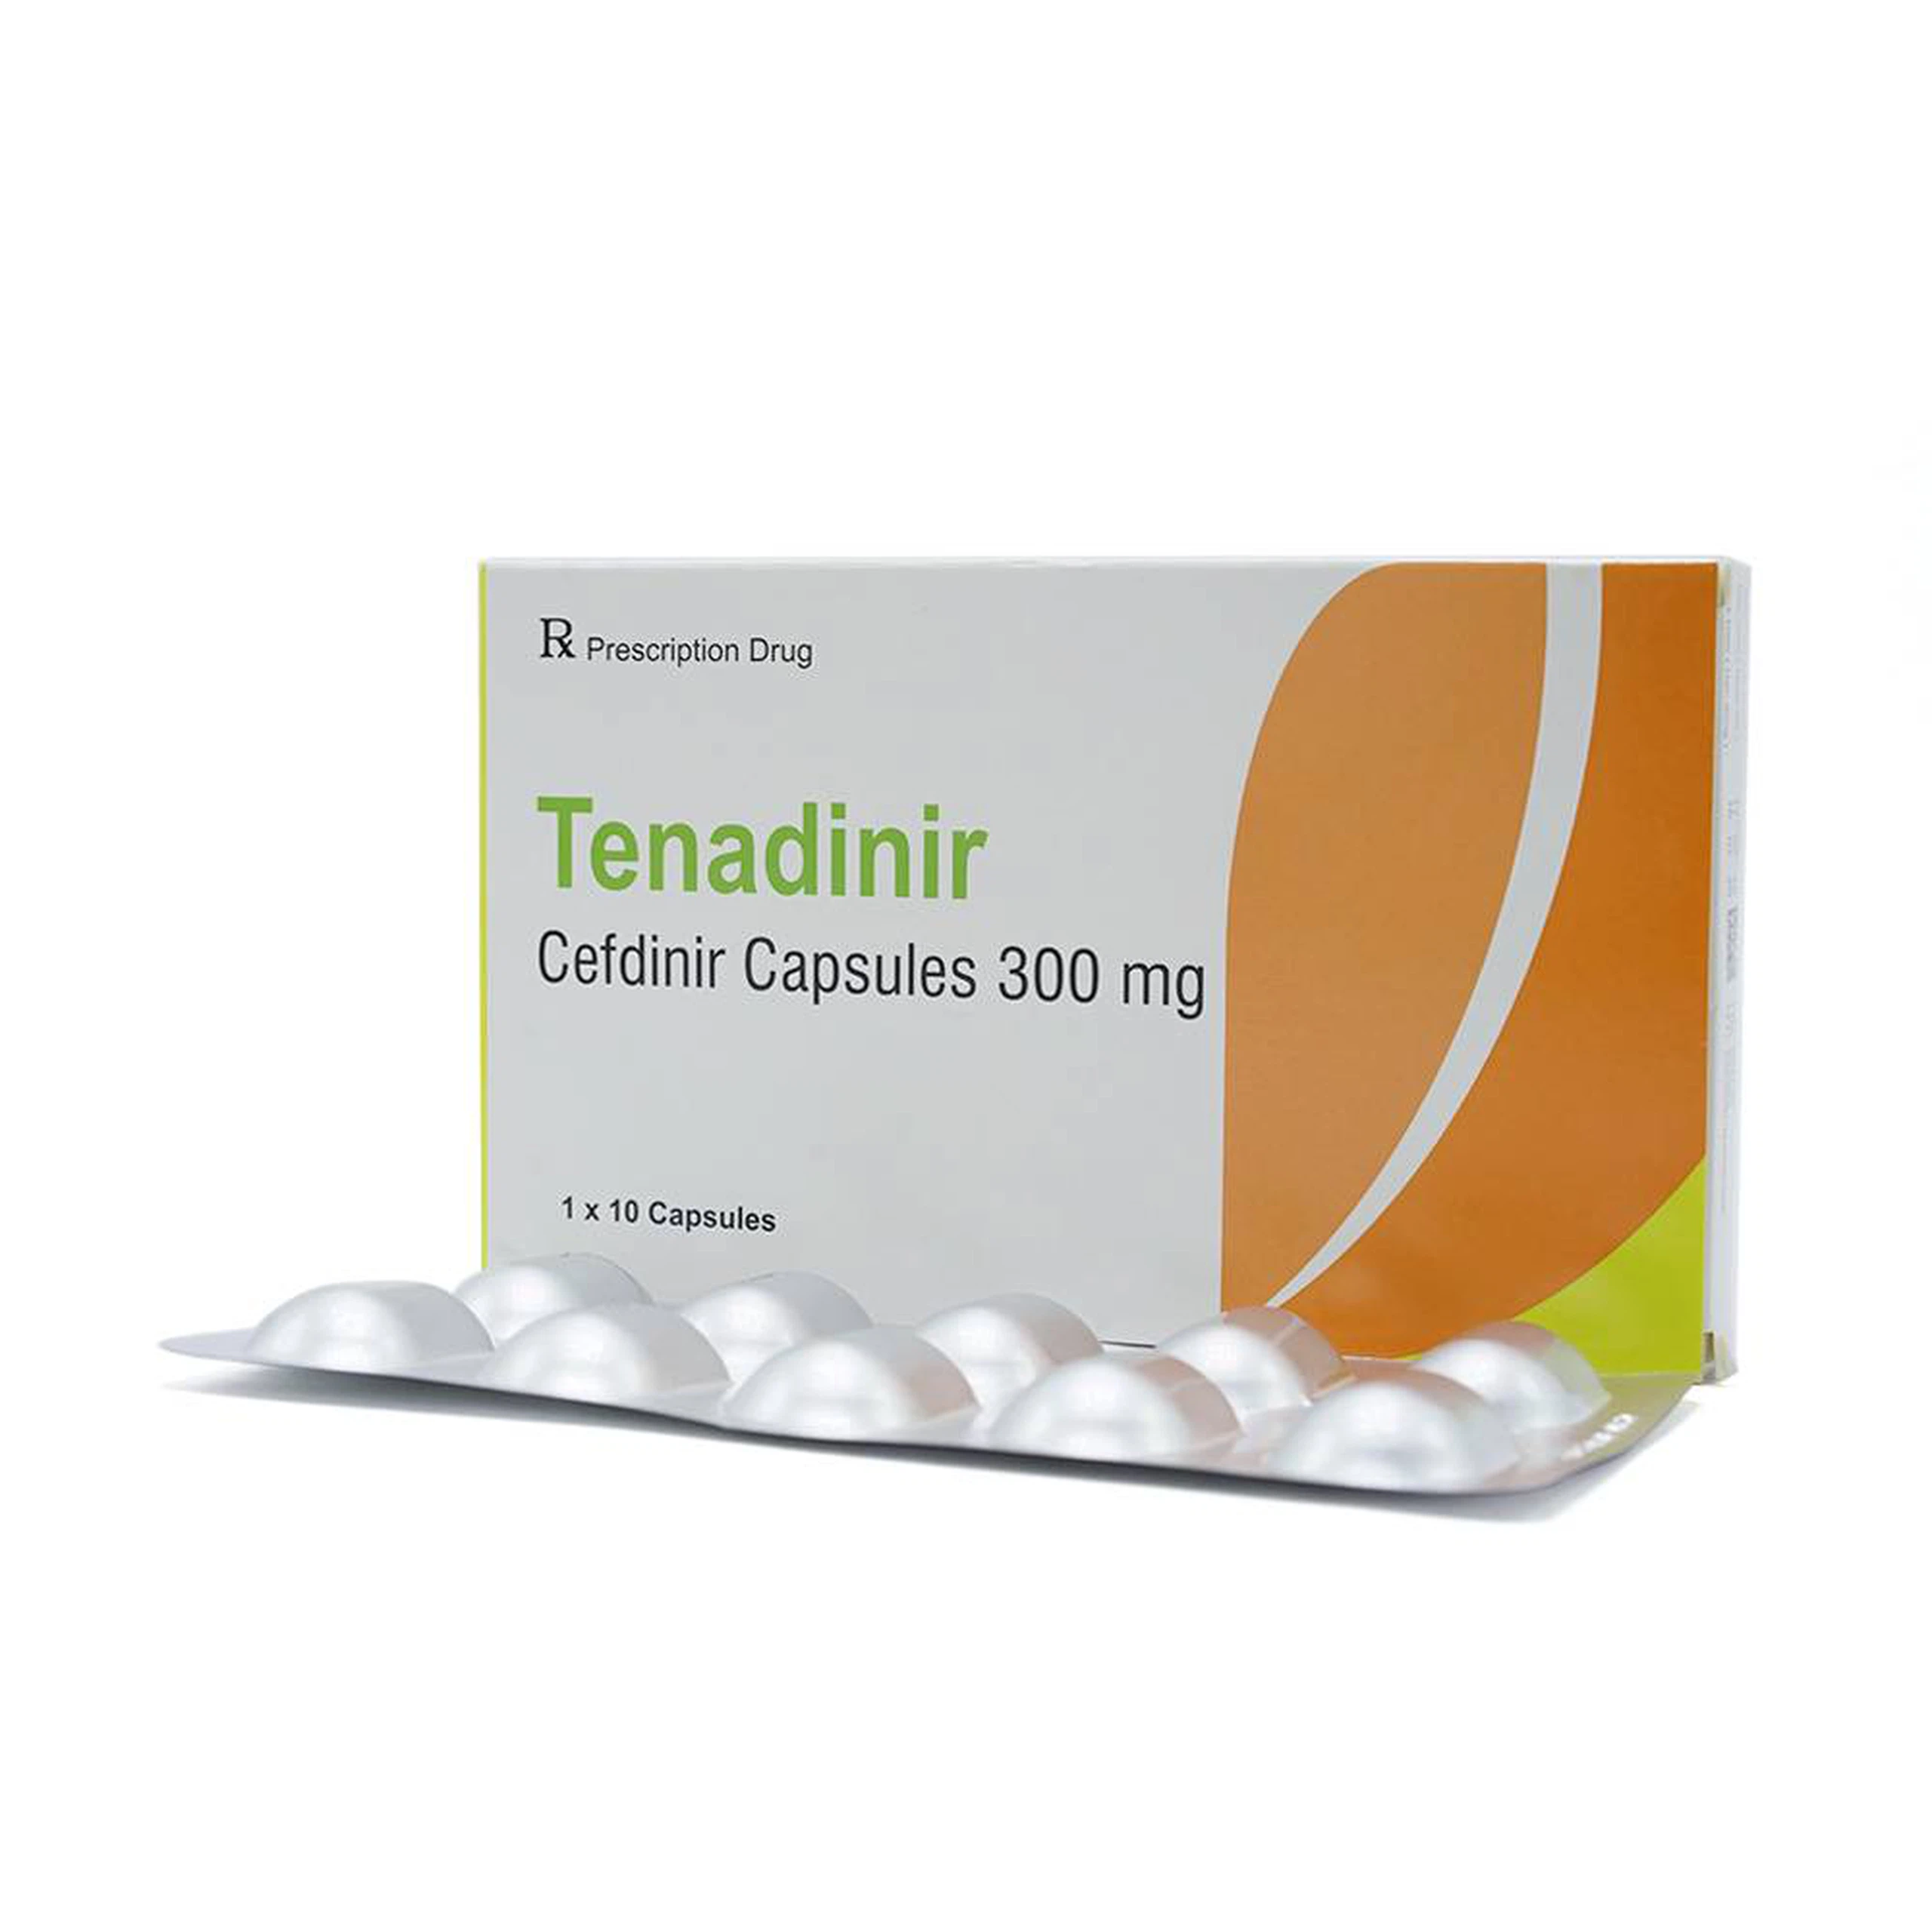 Thuốc Tenadinir Maxim điều trị nhiễm khuẩn nhẹ và vừa (1 vỉ x 10 viên)